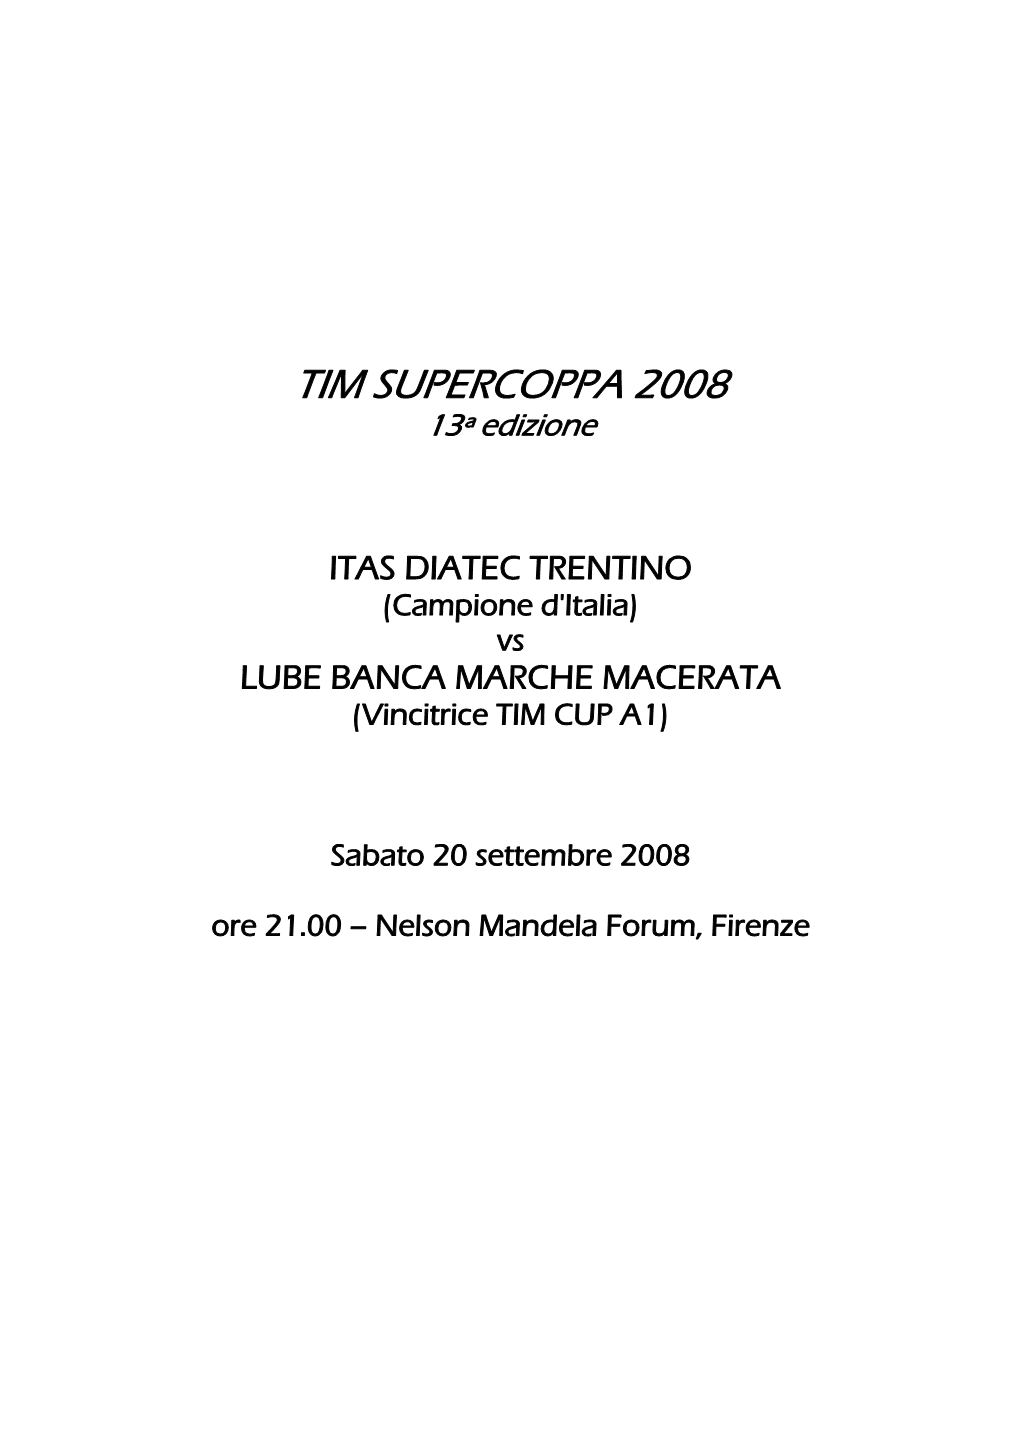 TIM SUPERCOPPA 2008 13ª Edizione